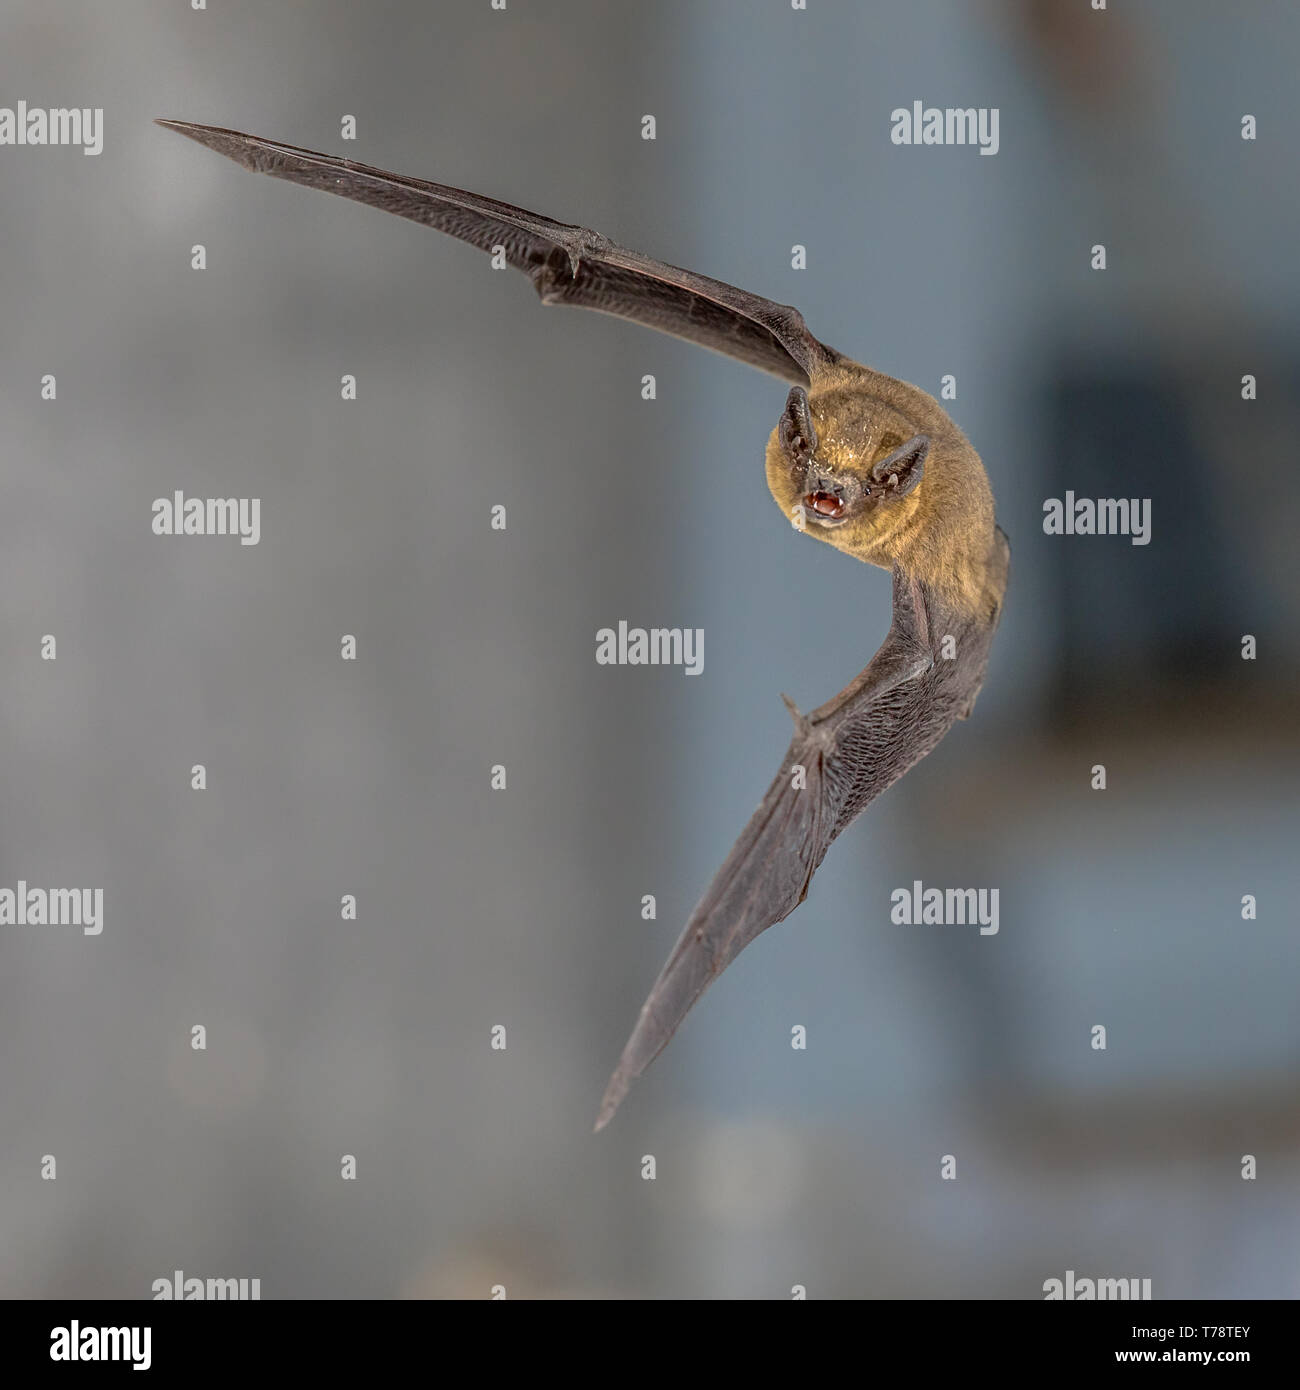 Flying Pipistrelle bat (Pipistrellus pipistrellus) fotografía de alta velocidad de captura de animales de caza sobre fondo azul. Esta especie se conoce para posarse Foto de stock